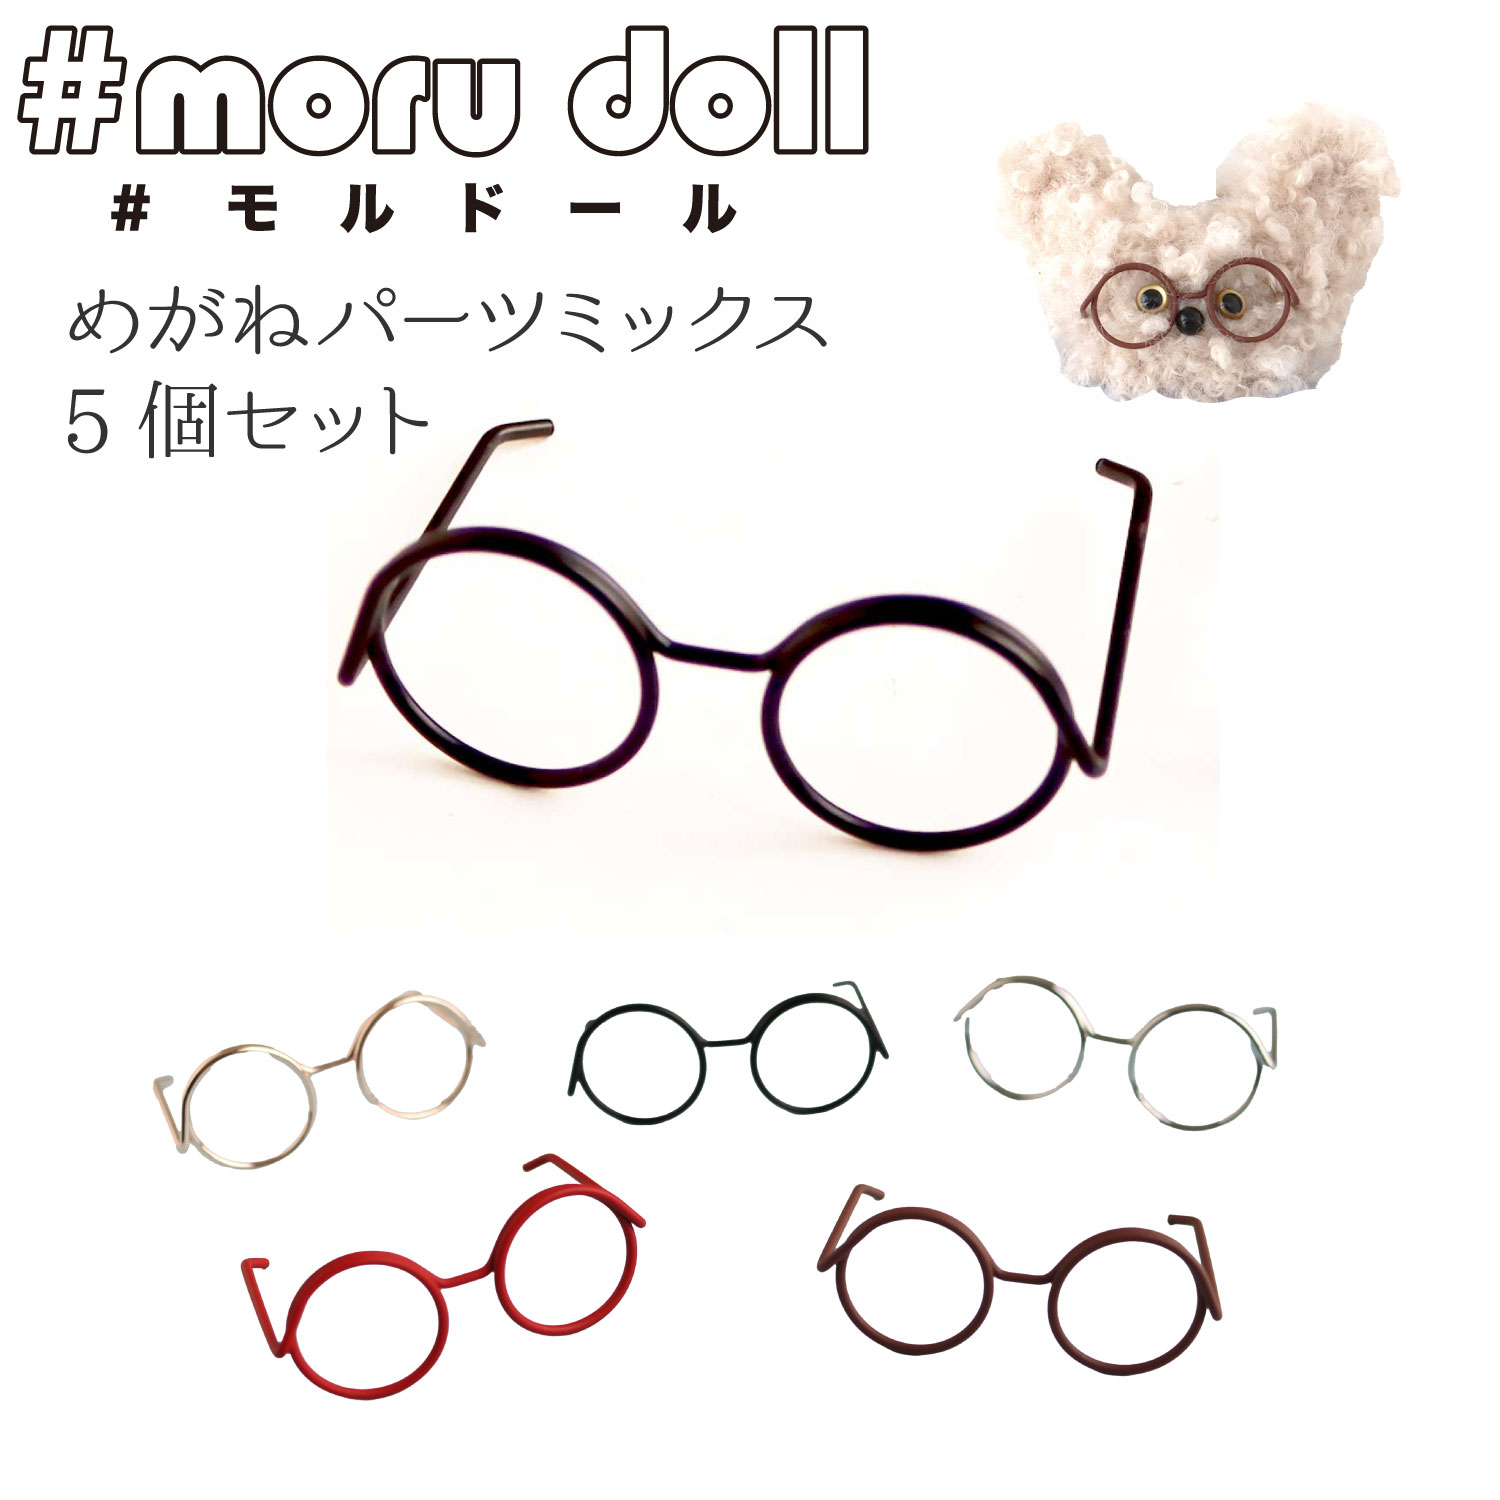 【キャンペーン対象】MOL-GMIX モール人形 モールドール  めがねパーツミックス 5個入 (袋)